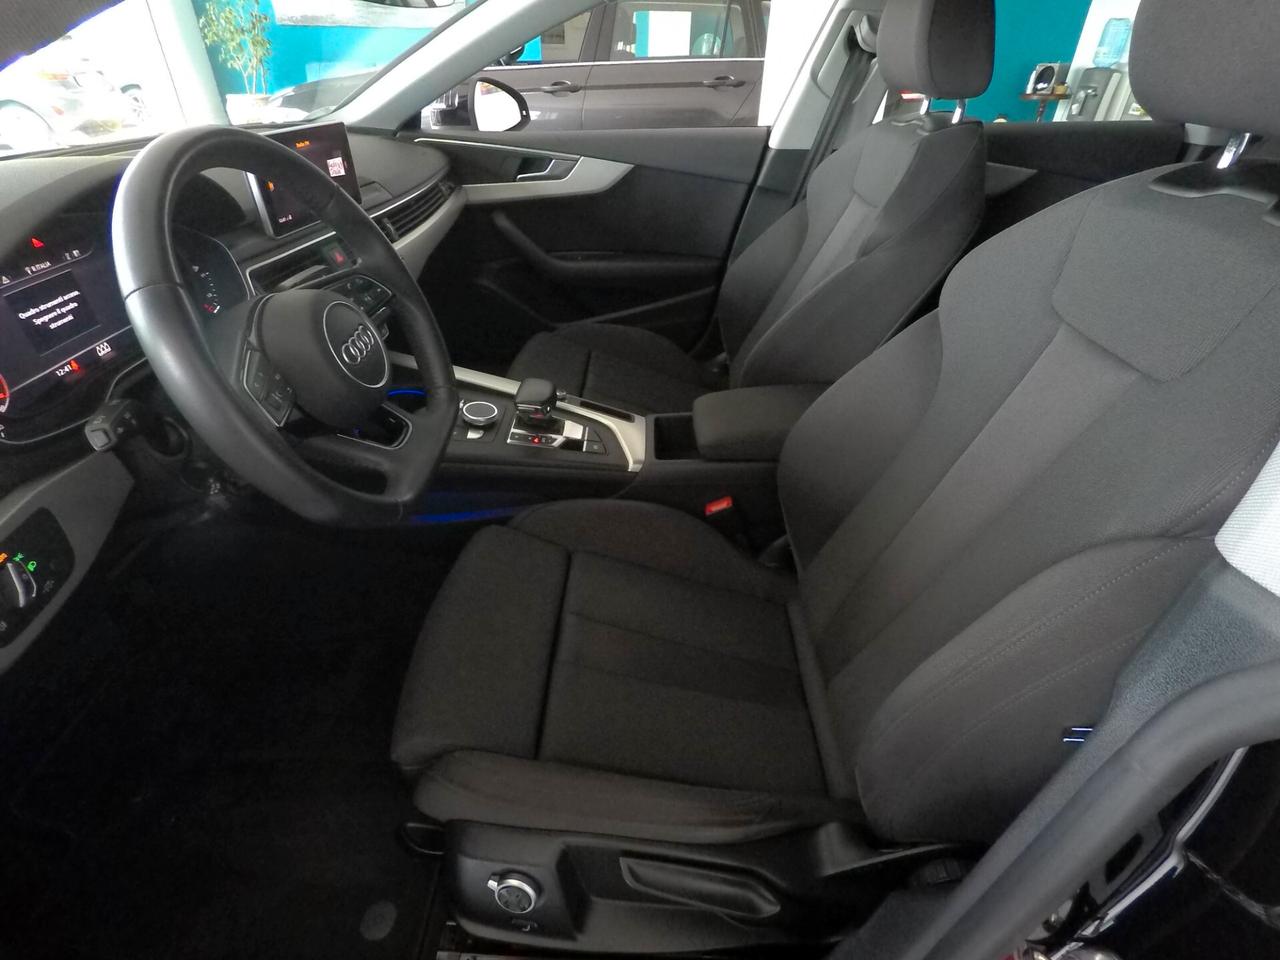 Audi A5 SPB 40 TDI S tronic Sport - Virtual cockpit